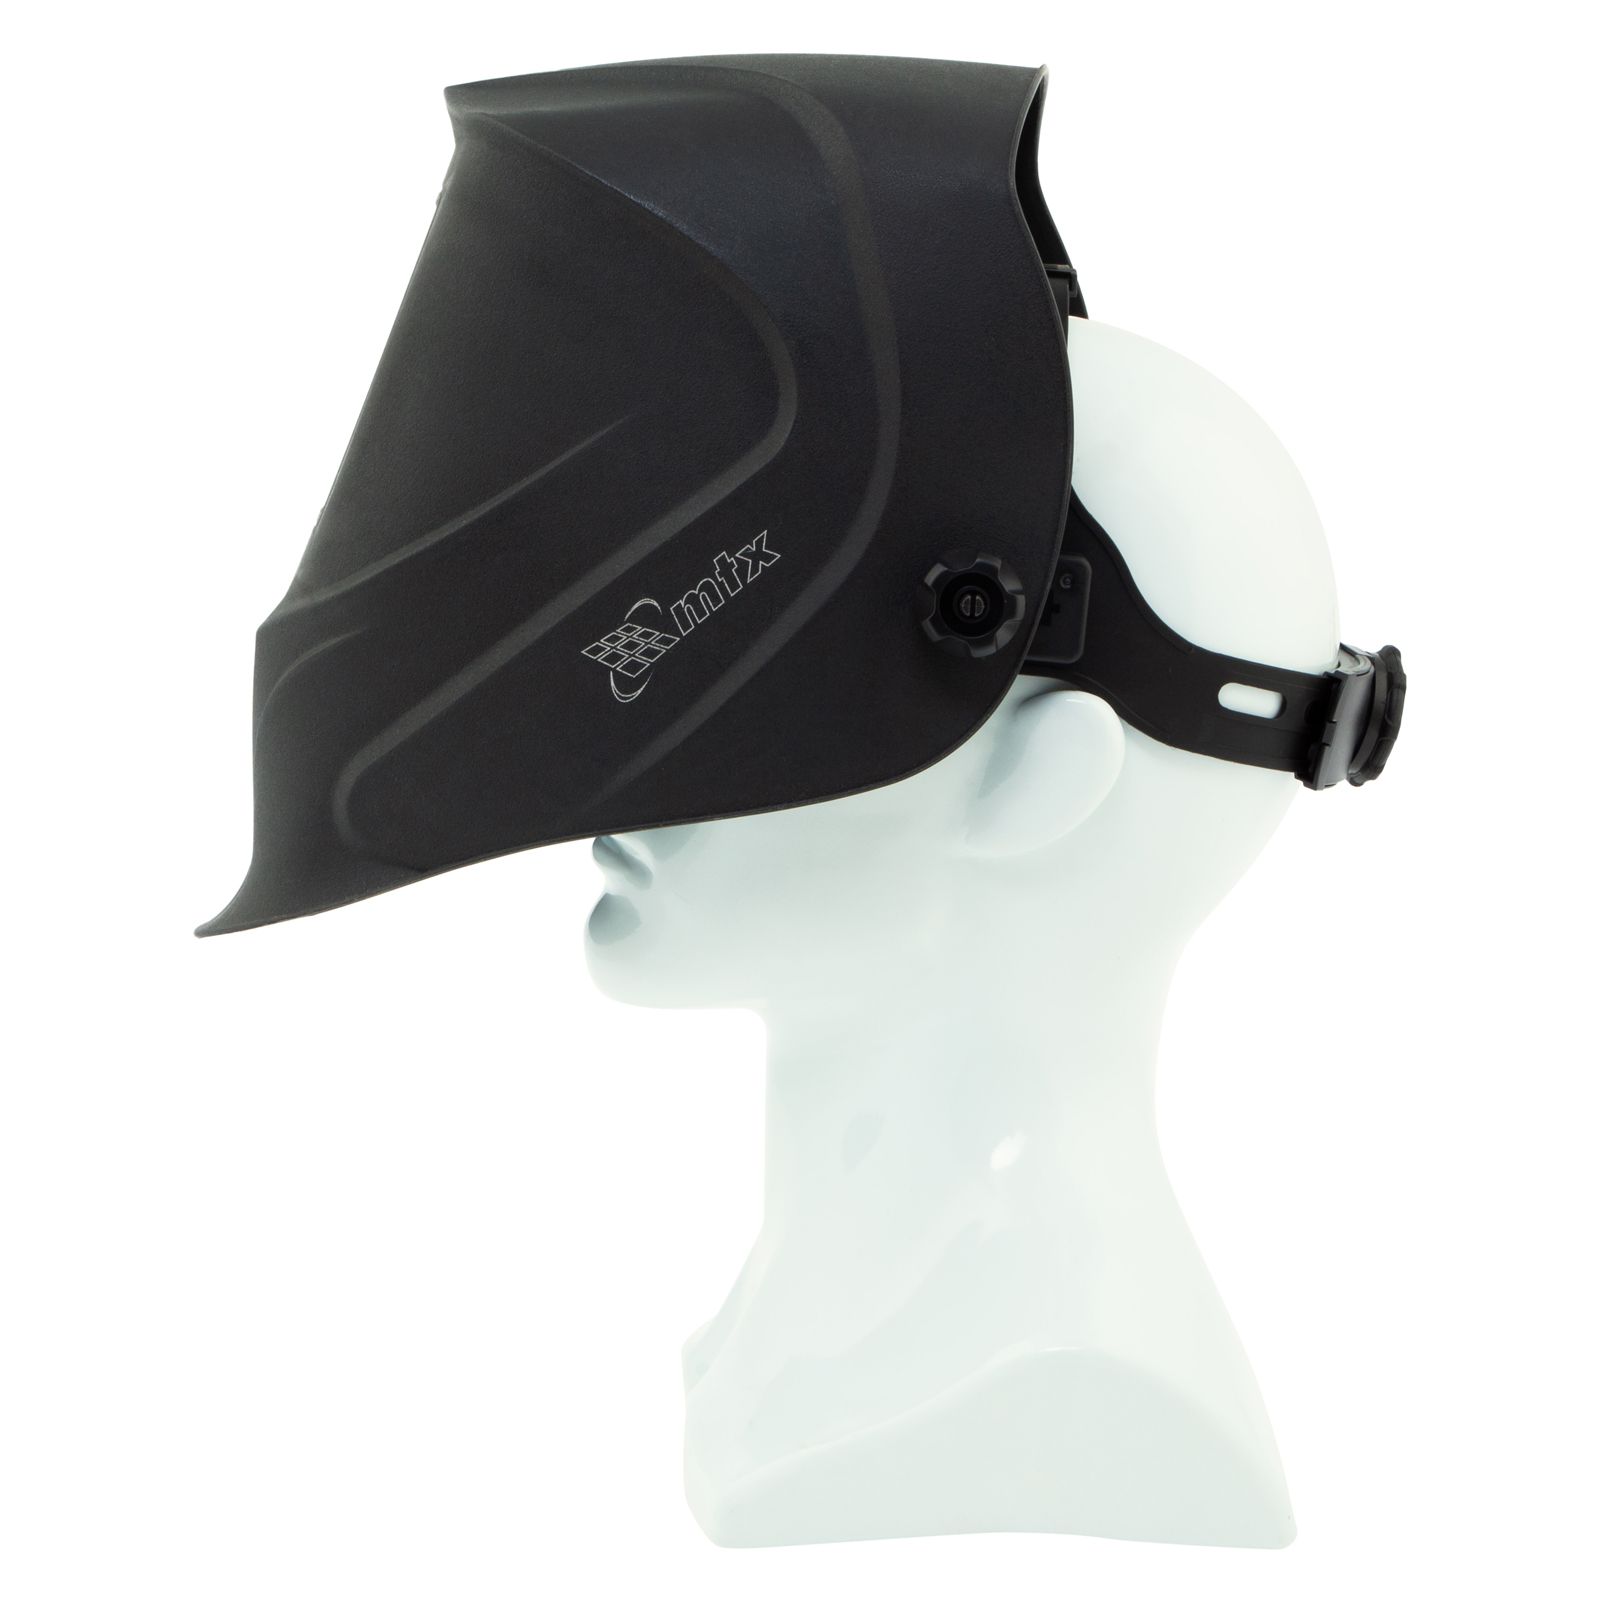 Щиток защитный лицевой (маска сварщика) MTX-100AF, размер см. окна 90х35, DIN 3/11// MTX 